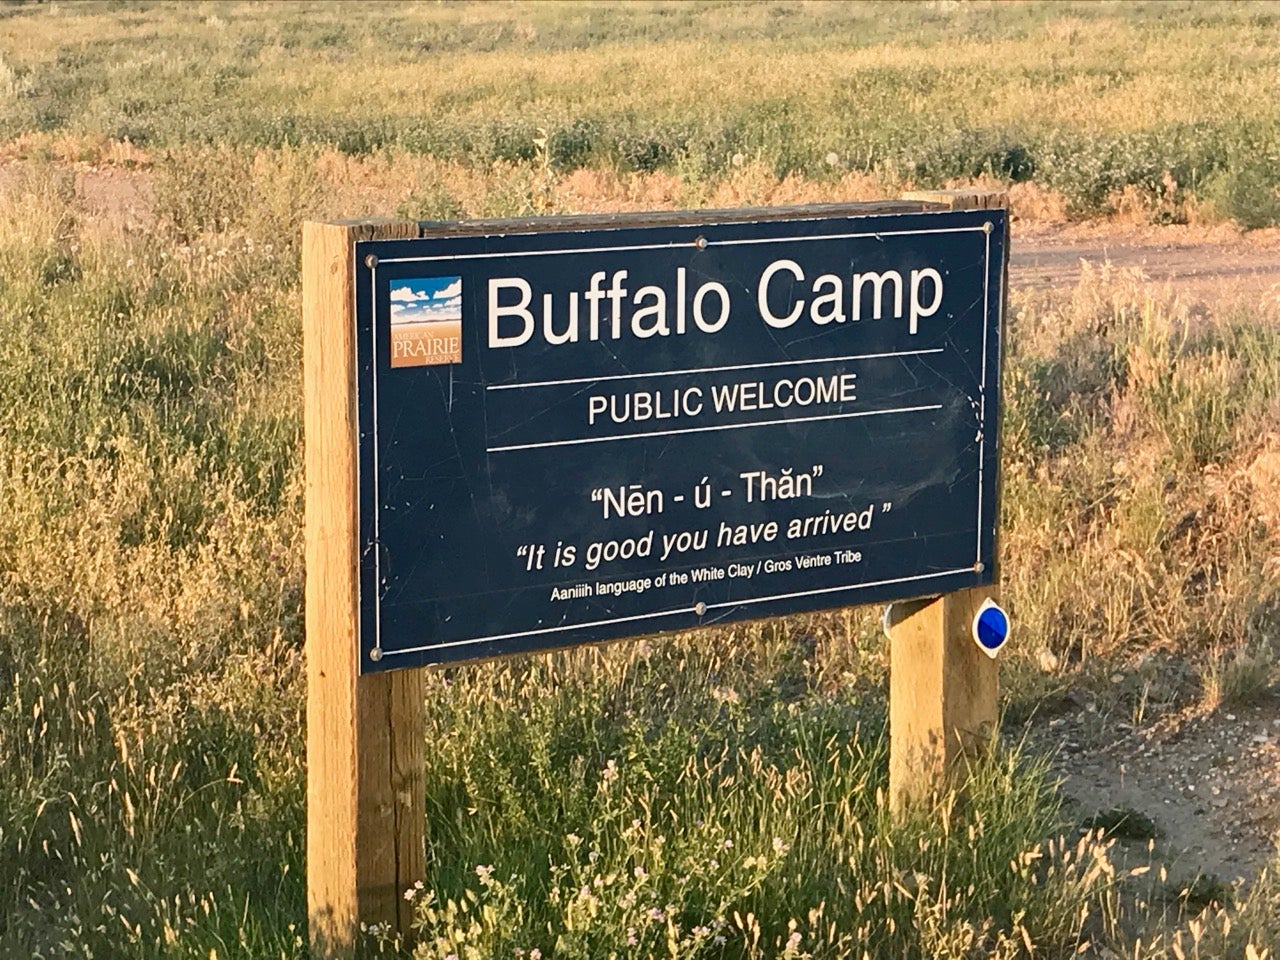 Buffalo Camp